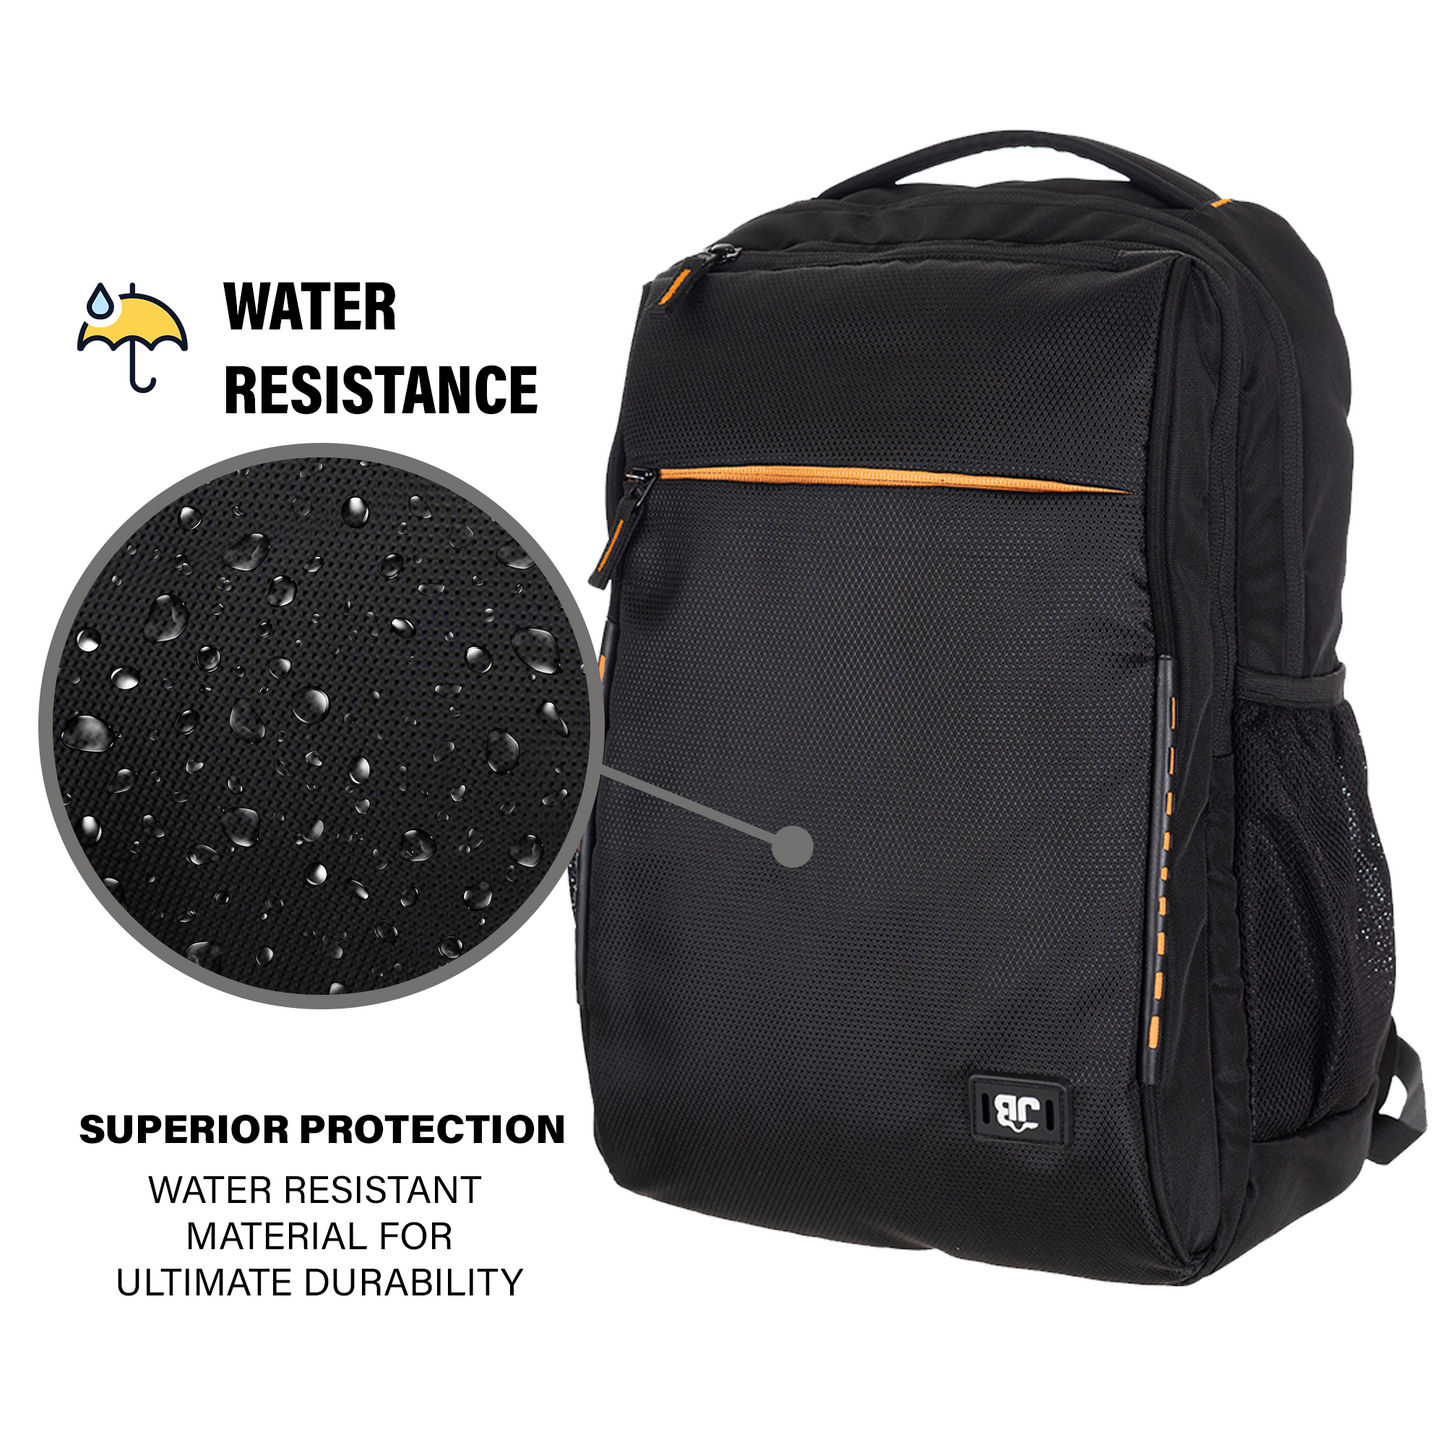 Byte Unisex Black Orange Sleek Laptop Backpack